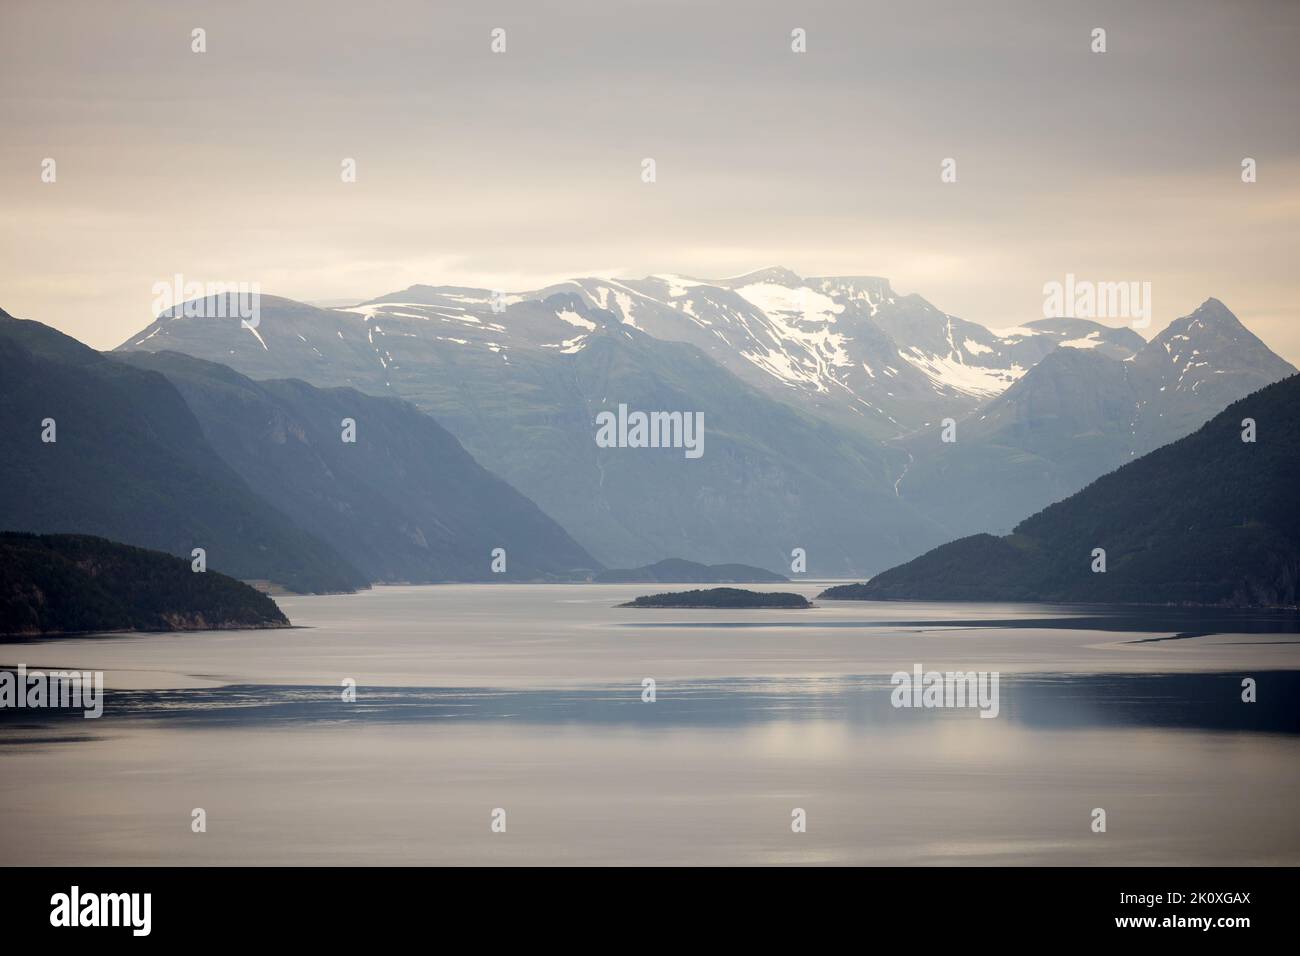 Vues incroyables en Norvège aux fjords, montagnes et autres miracles de la nature Banque D'Images